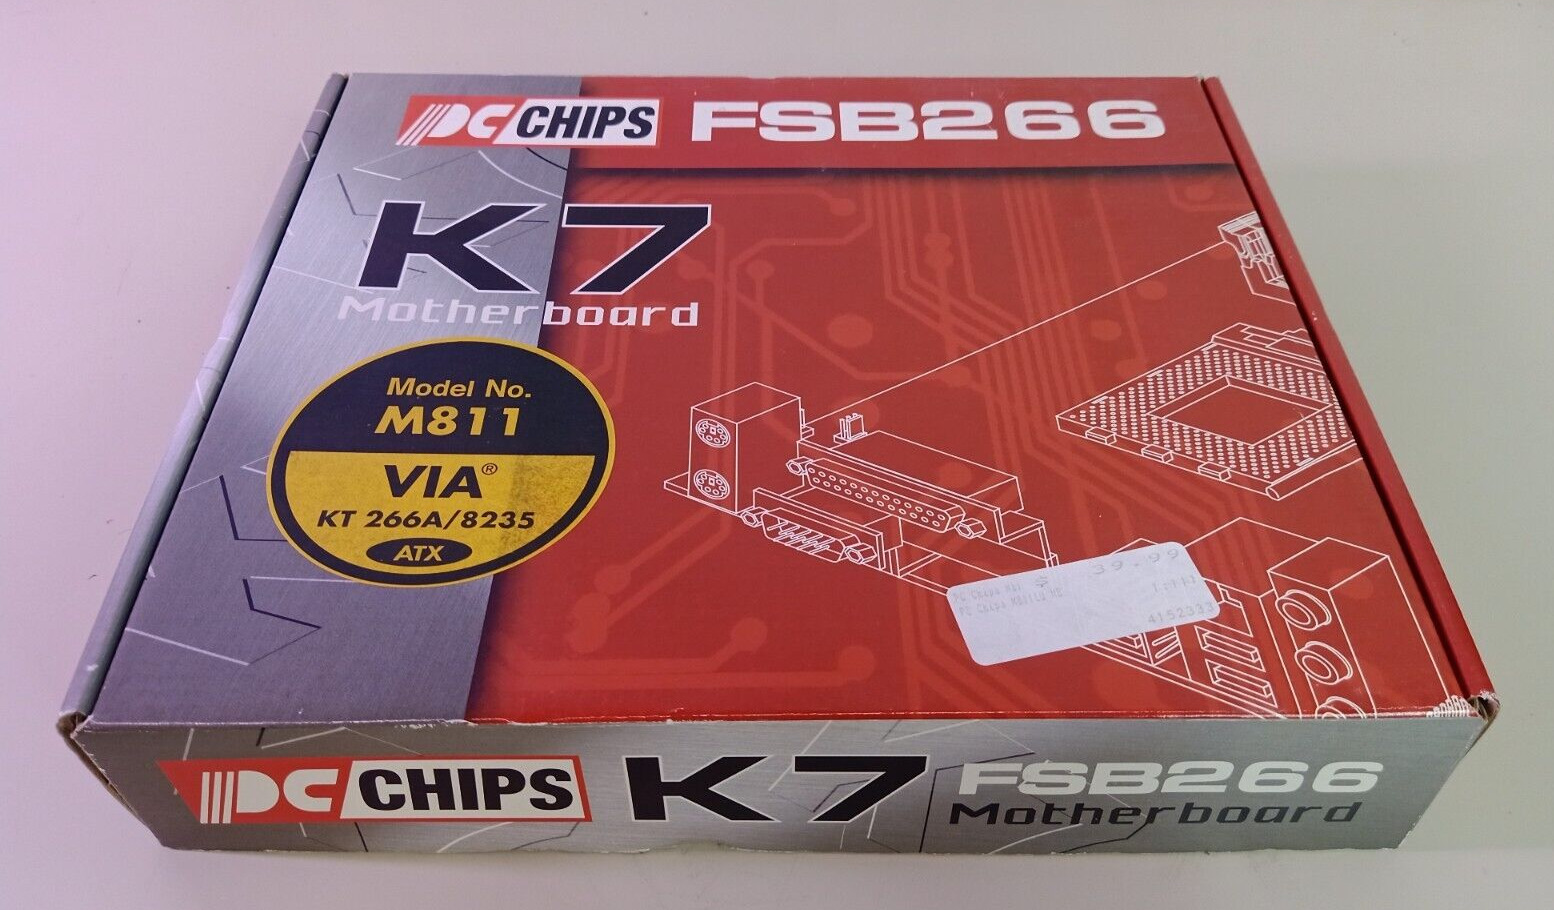 PC Chips FSB266 K7 Motherboard M811 VIA KT 266A/8235 ATX